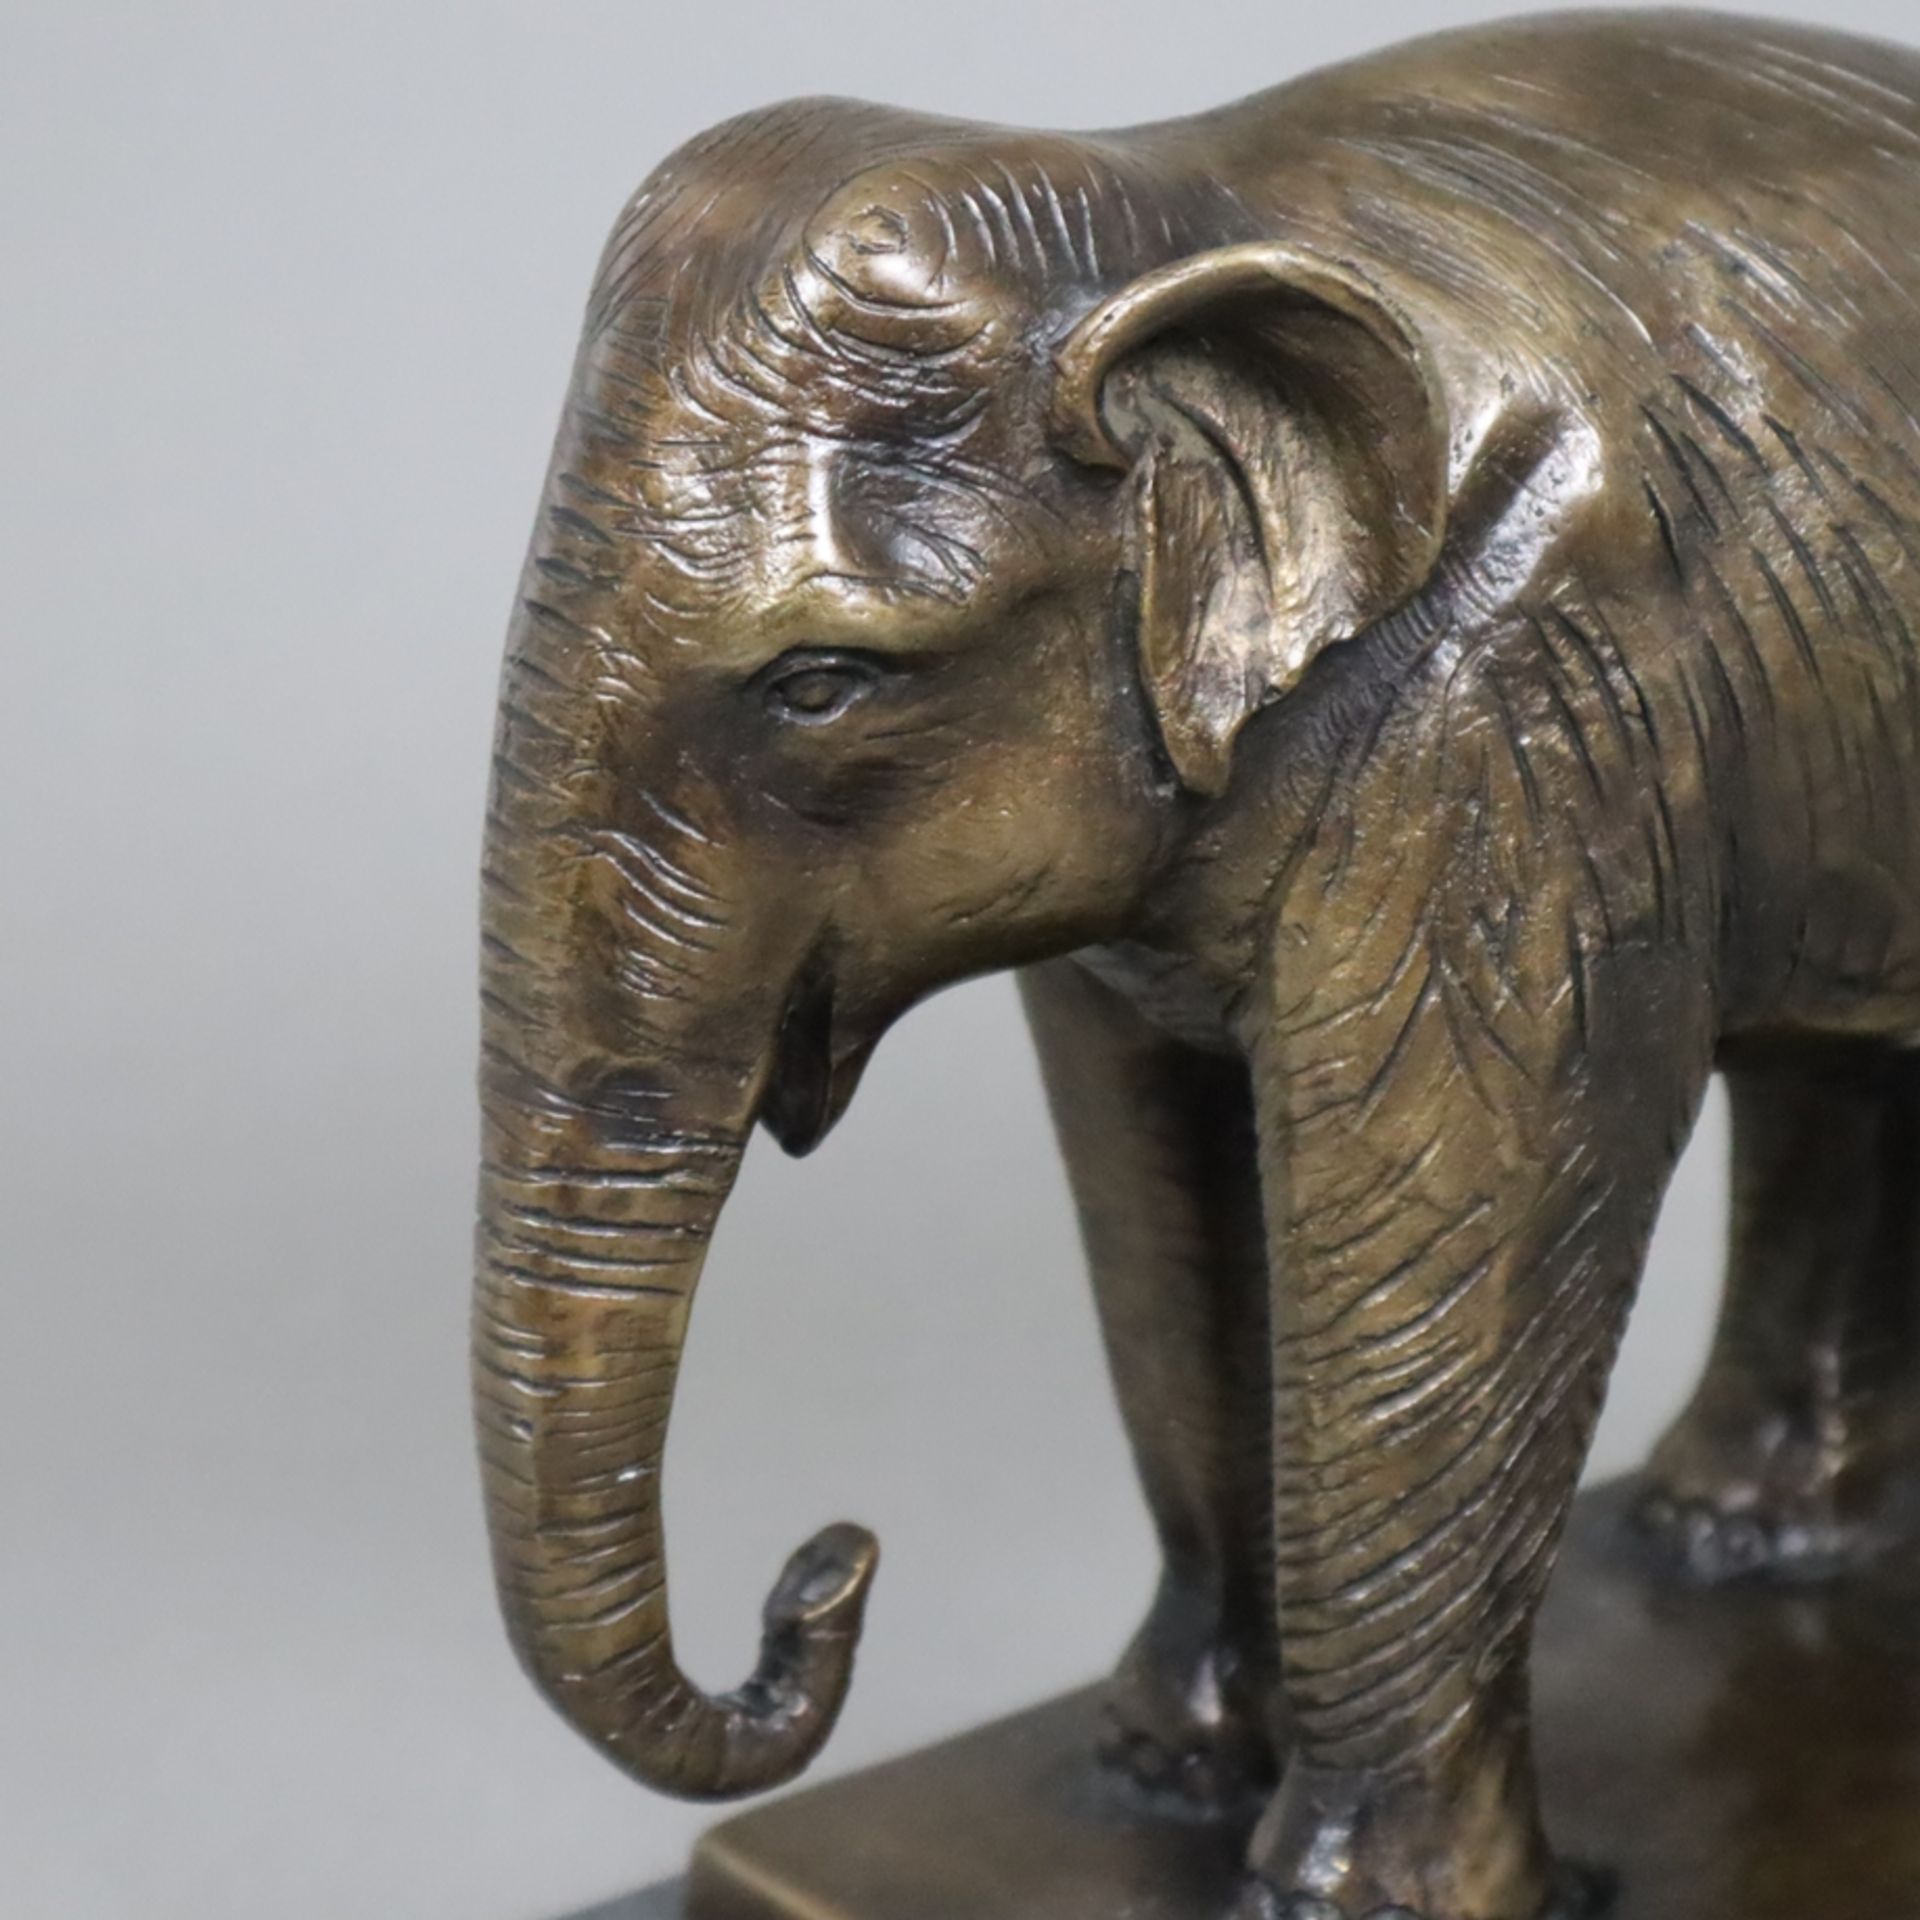 Tierfigur "Stehender Elefant" - Bronze, braun patiniert, naturalistische Darstellung auf rechteckig - Bild 2 aus 6